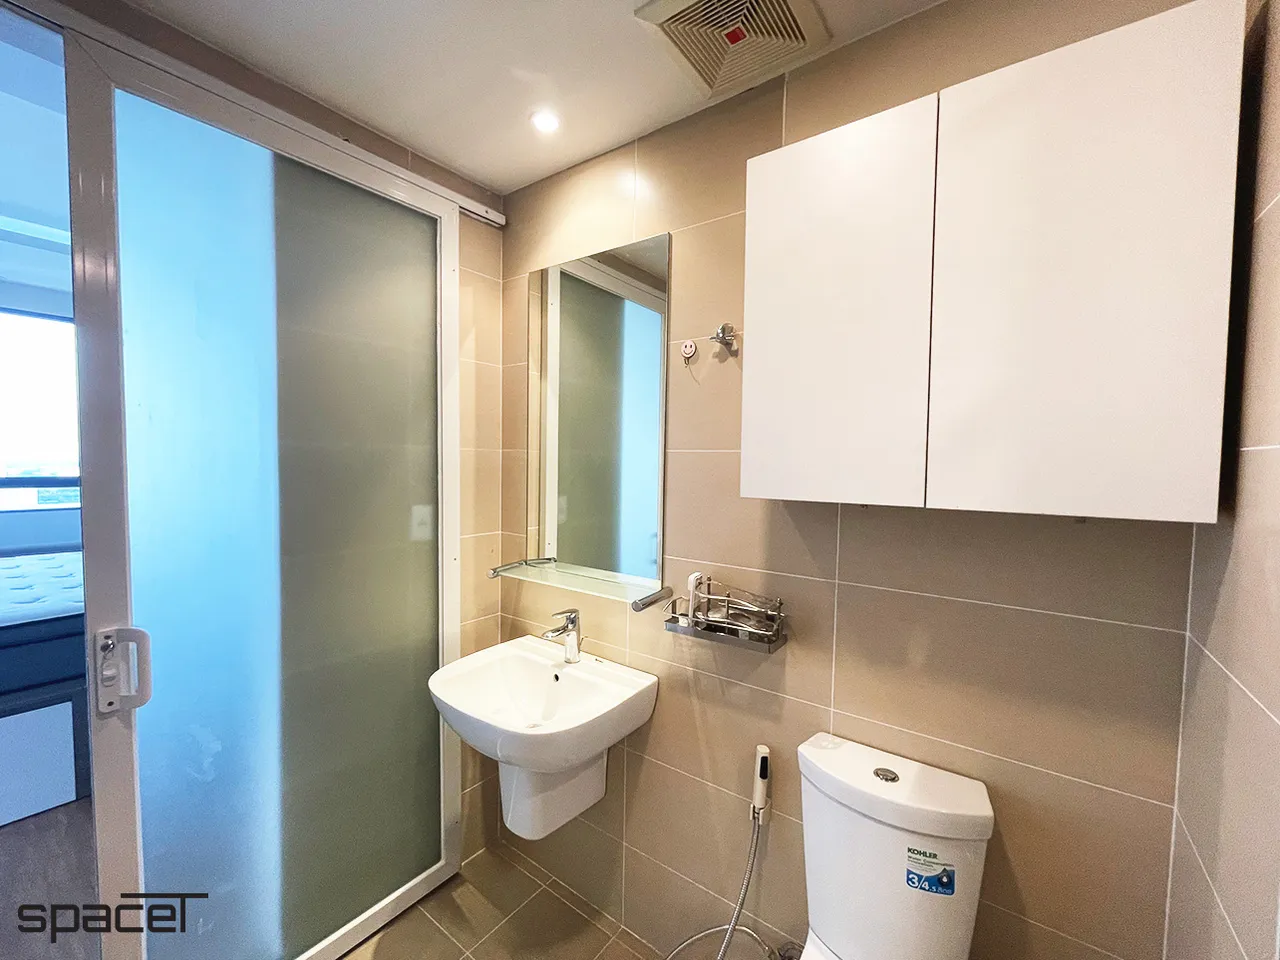 Hoàn thiện nội thất phòng tắm, nhà vệ sinh Căn hộ Masteri Thảo Điền Quận 2 phong cách hiện đại Modern